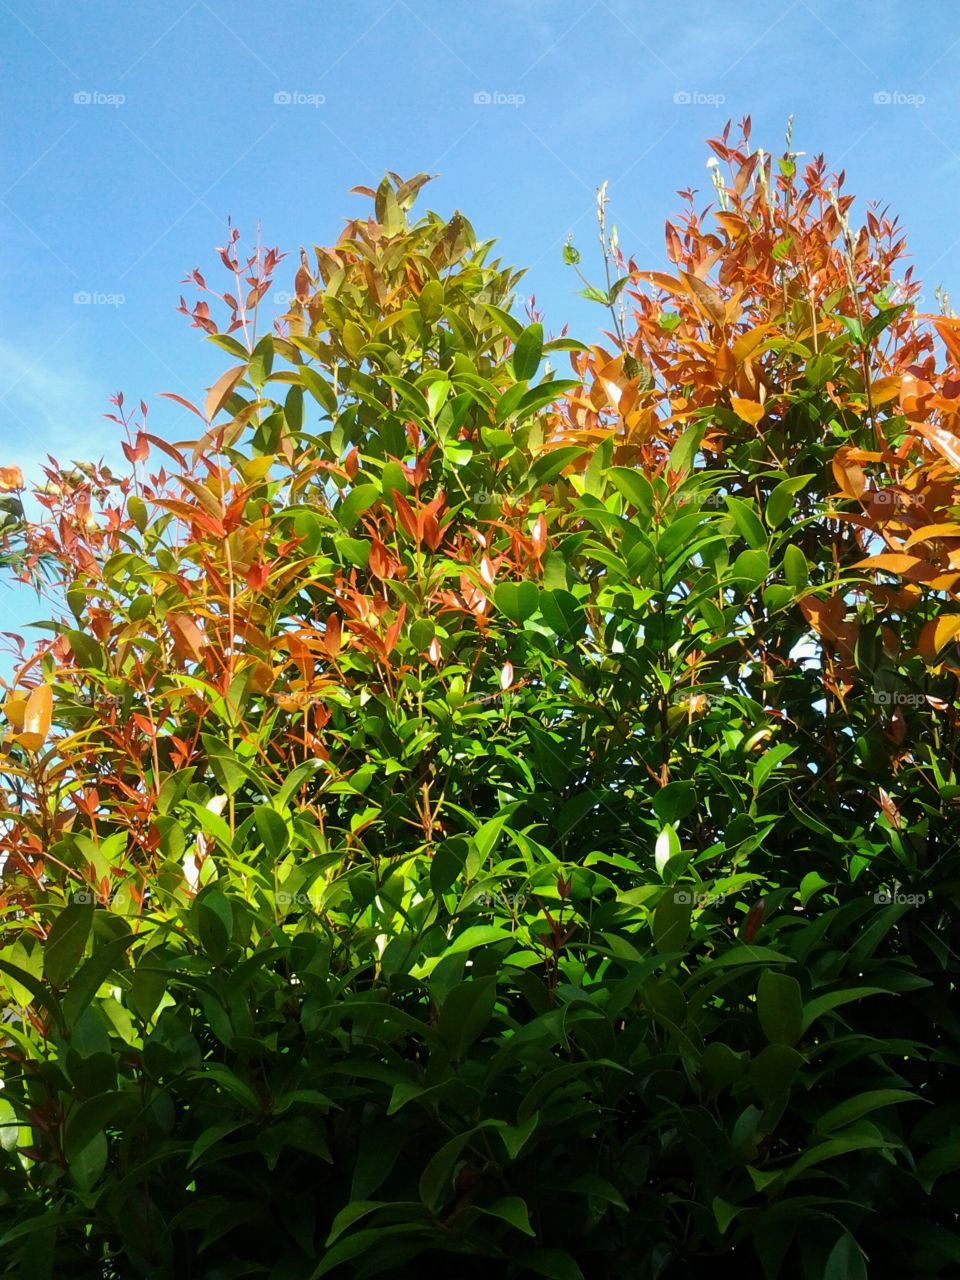 plant in my yard